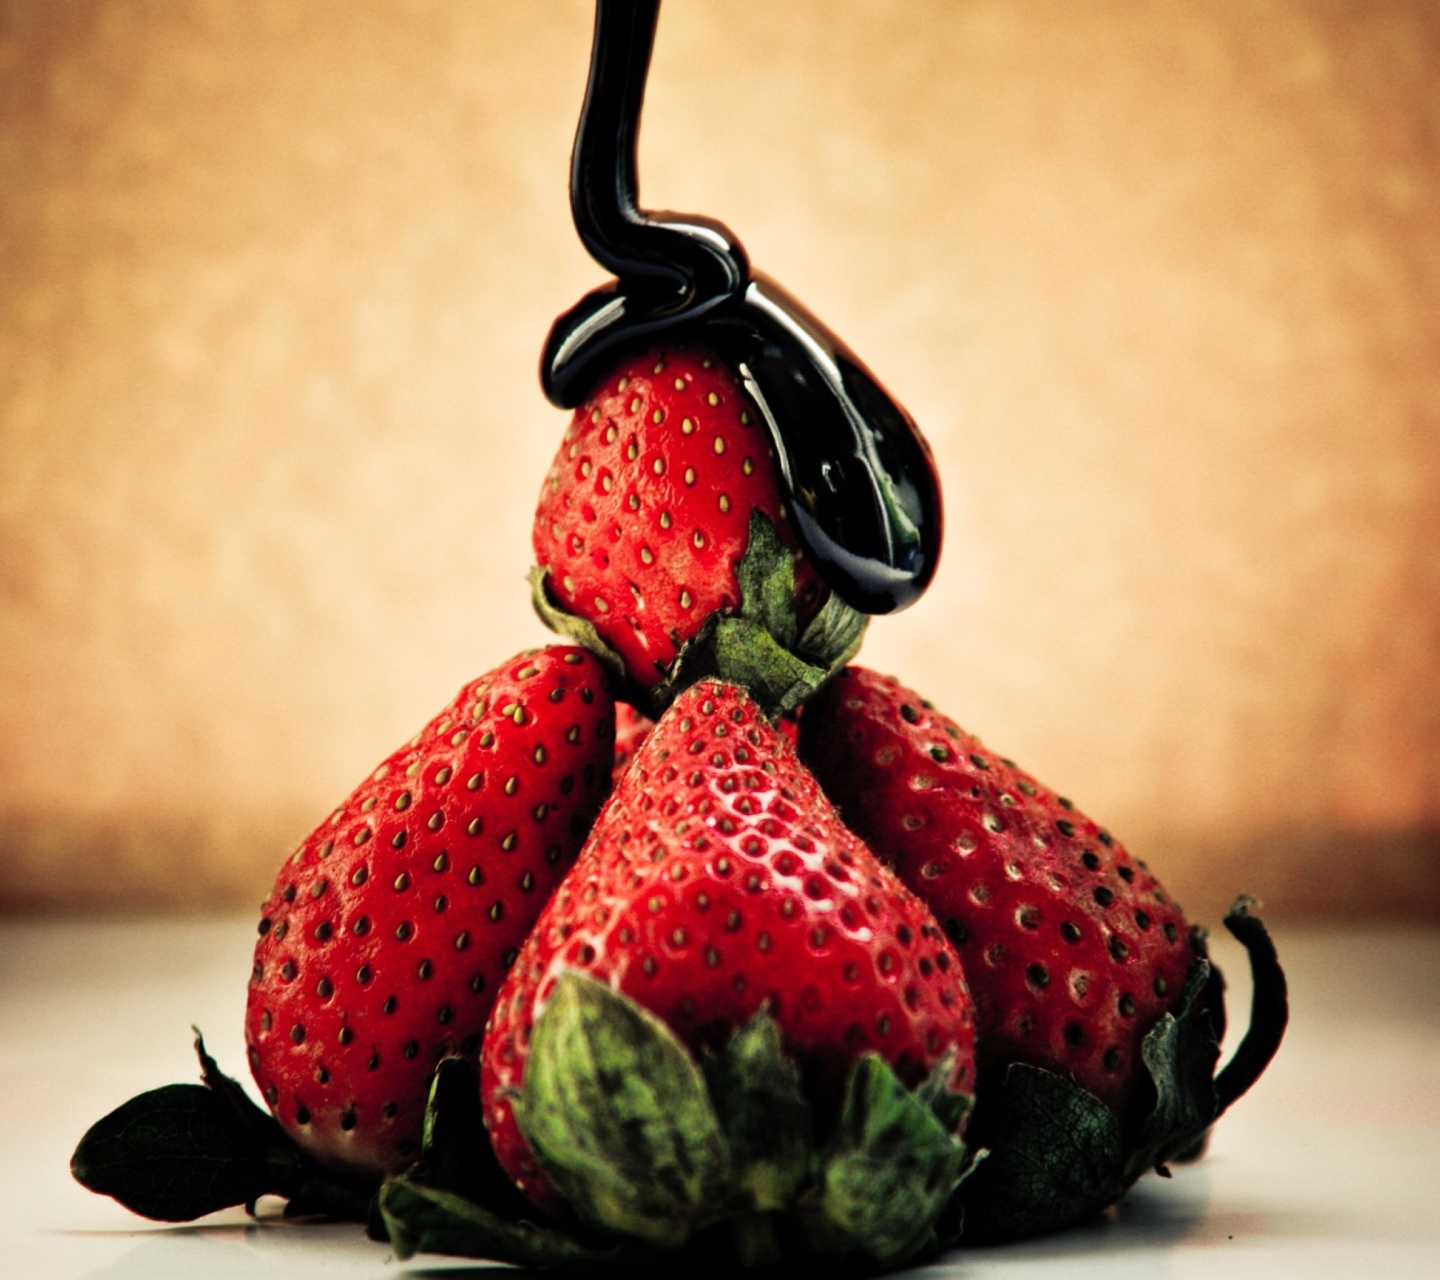 Strawberries with chocolate screenshot #1 1440x1280